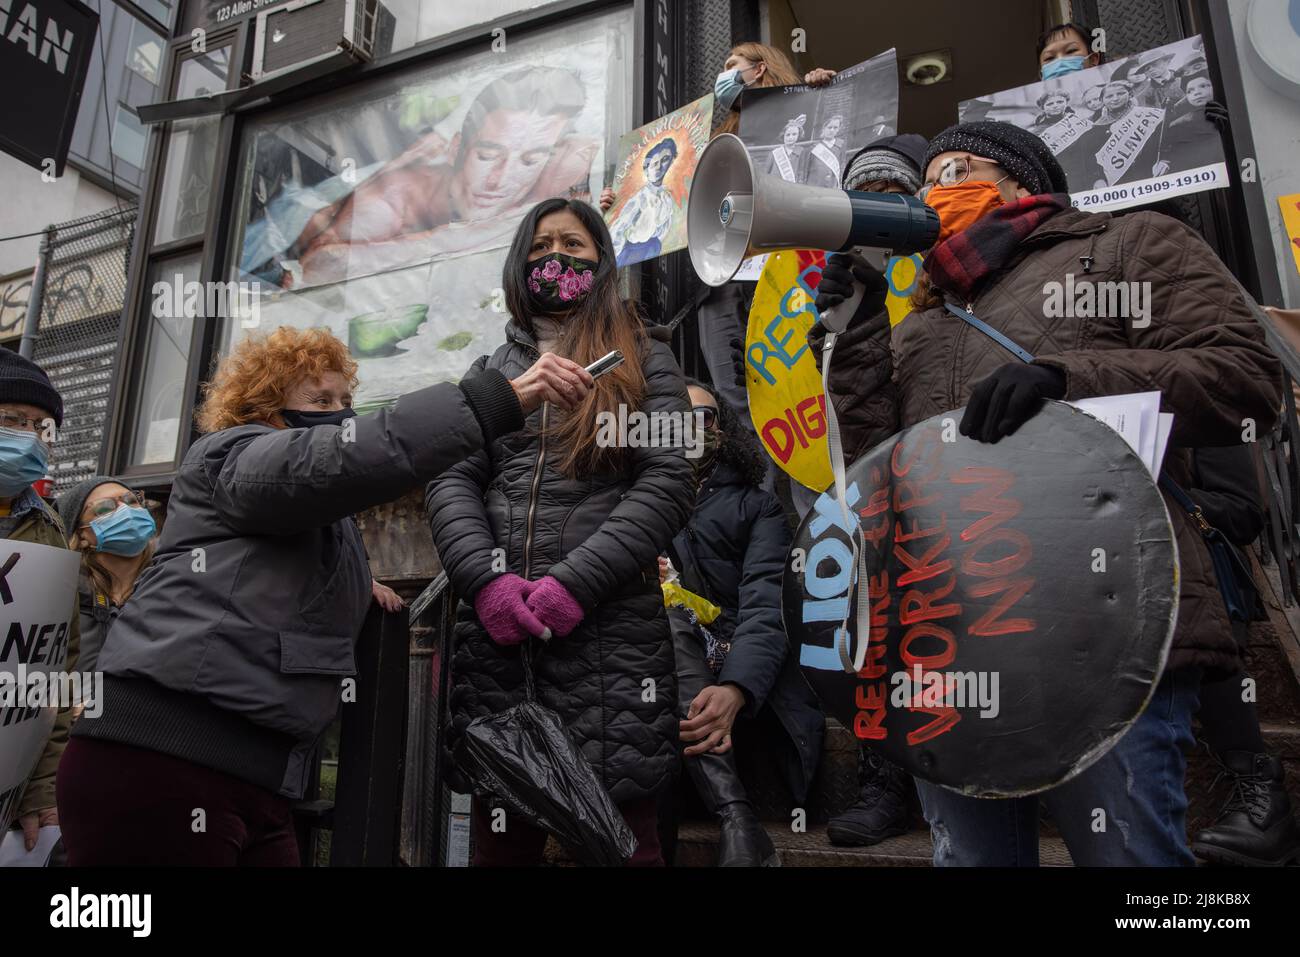 NEW YORK, N.Y. – 6 marzo 2021: I manifestanti si radunano in vista della Giornata internazionale della donna a sostegno dei lavoratori della lavanderia automatica che dichiarano di aver terminato le loro azioni in modo illecito. Foto Stock